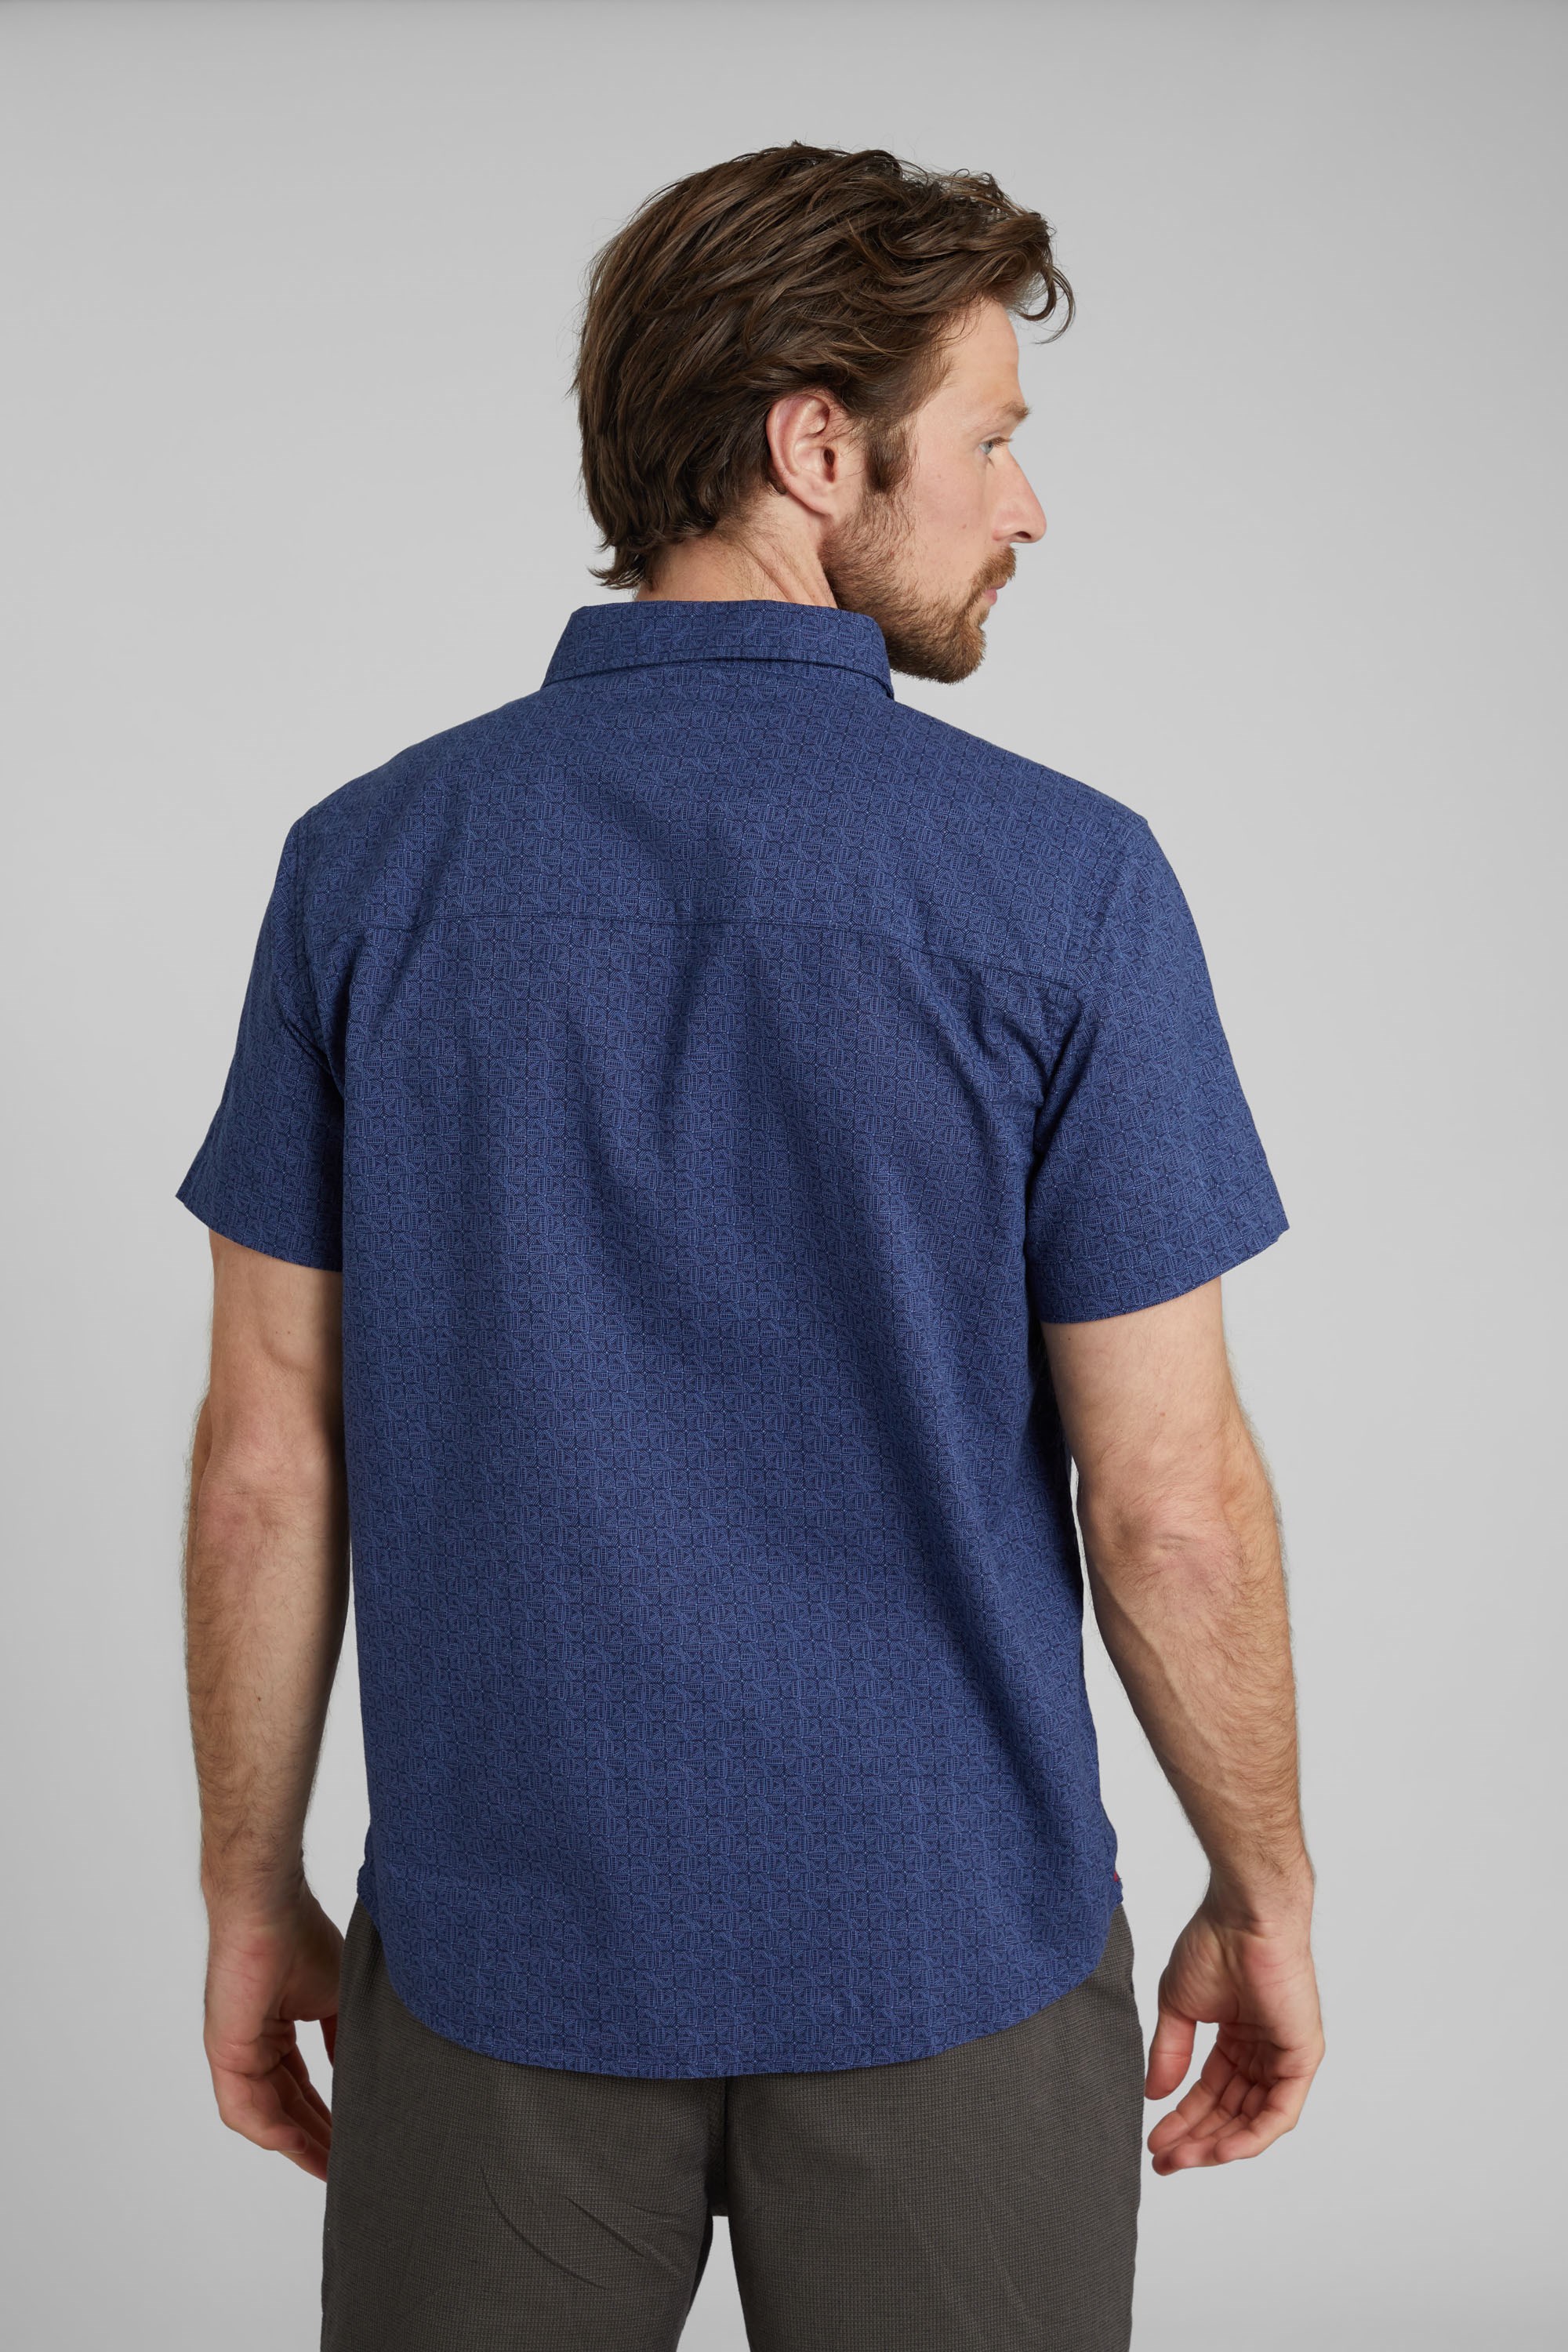 Ideal para Viajar Mountain Warehouse Geo Wave Camiseta Estampada para Hombre 100% de algodón al Aire Libre Senderismo y Acampada Transpirable Camiseta Ligera 